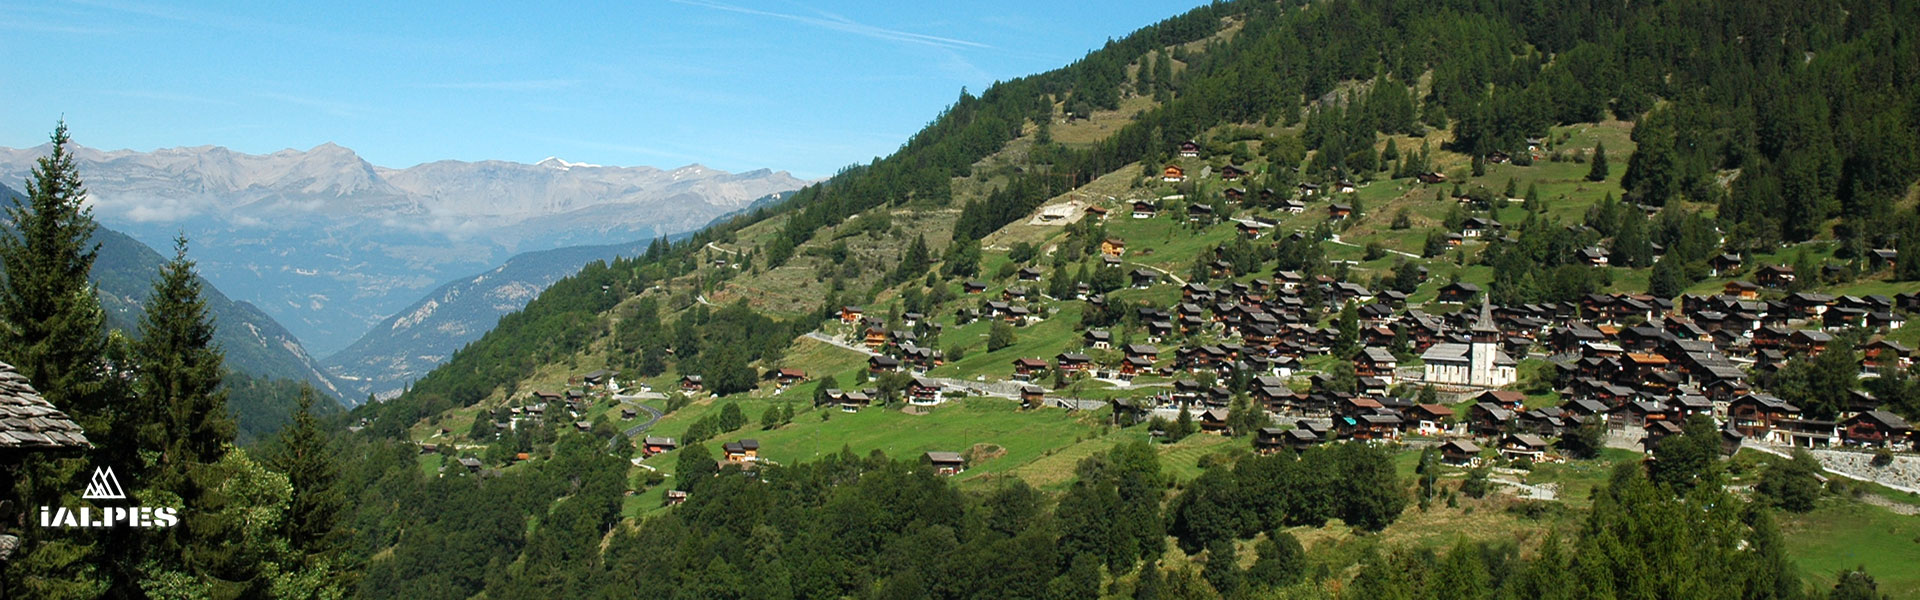 Village de montagne en Valais, Suisse